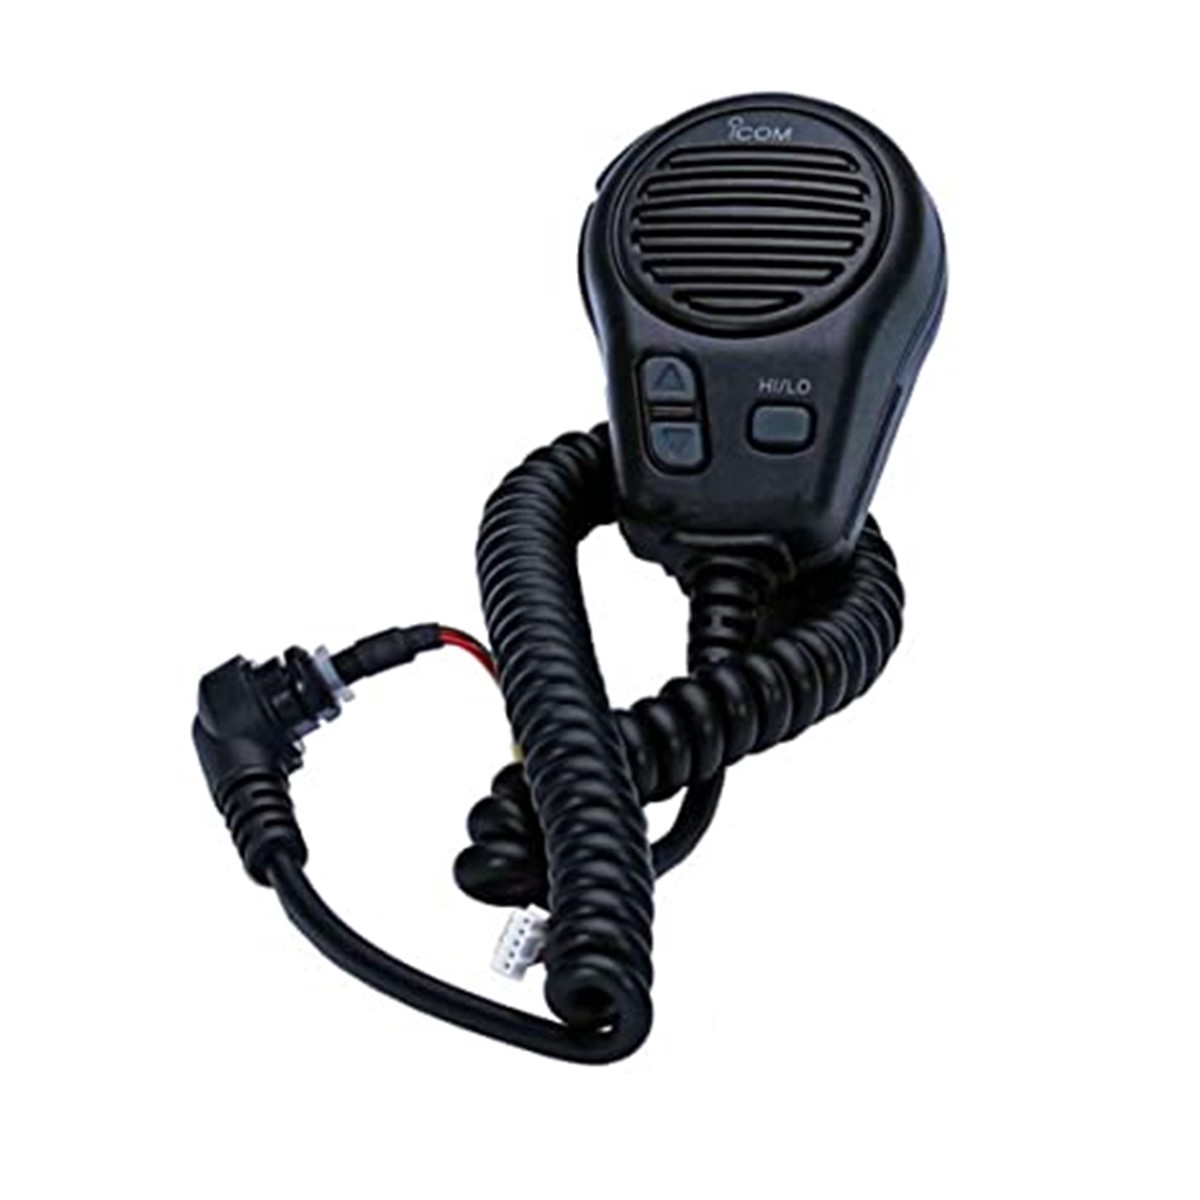 Micrófono Icom HM-164B para radio móvil